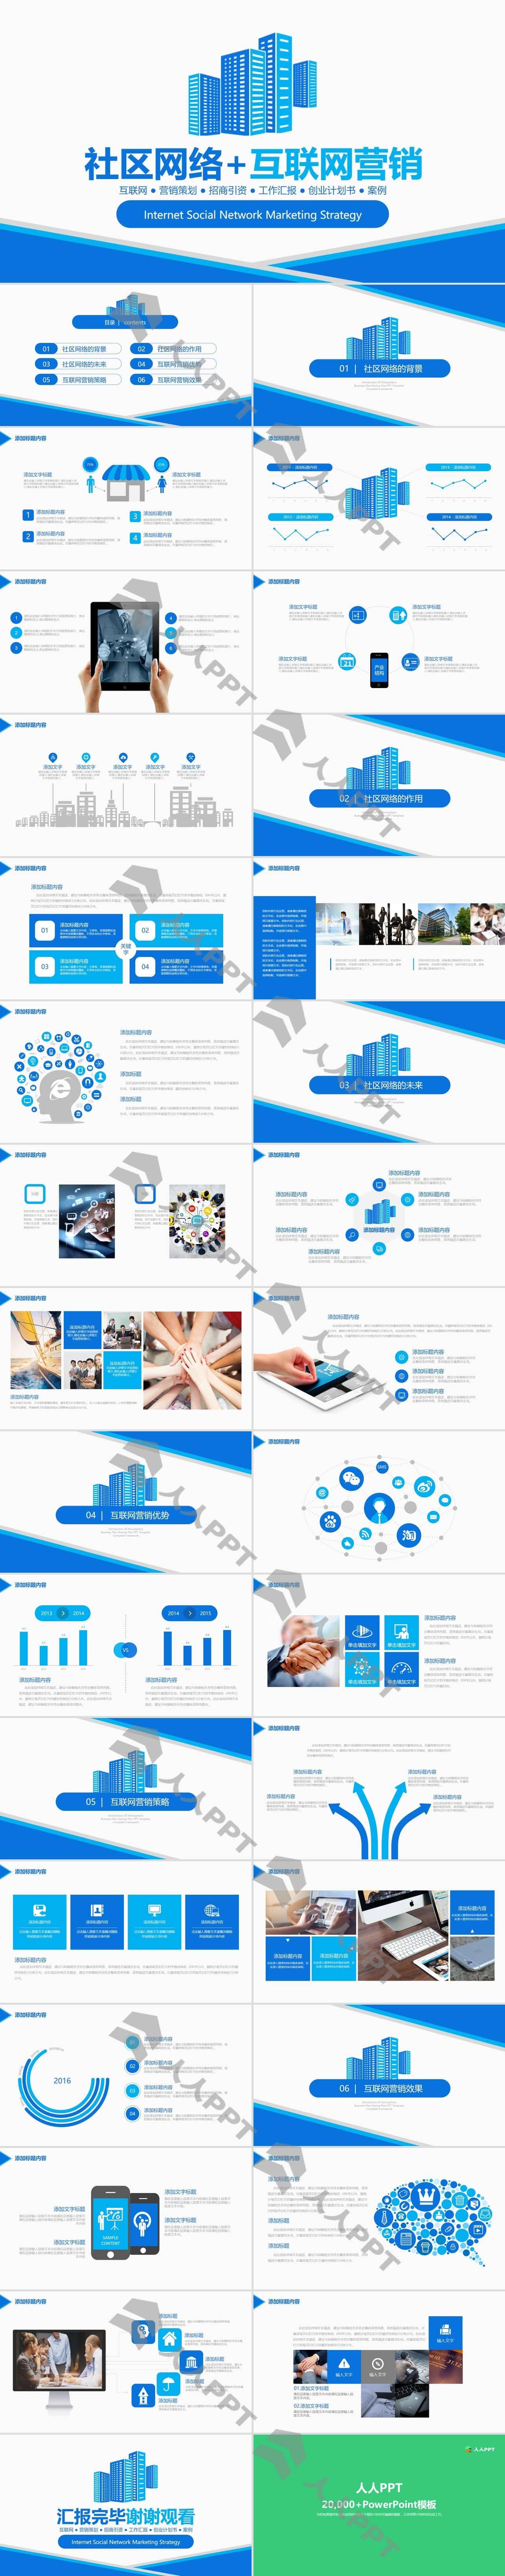 蓝色社区网络互联网营销PPT模板长图